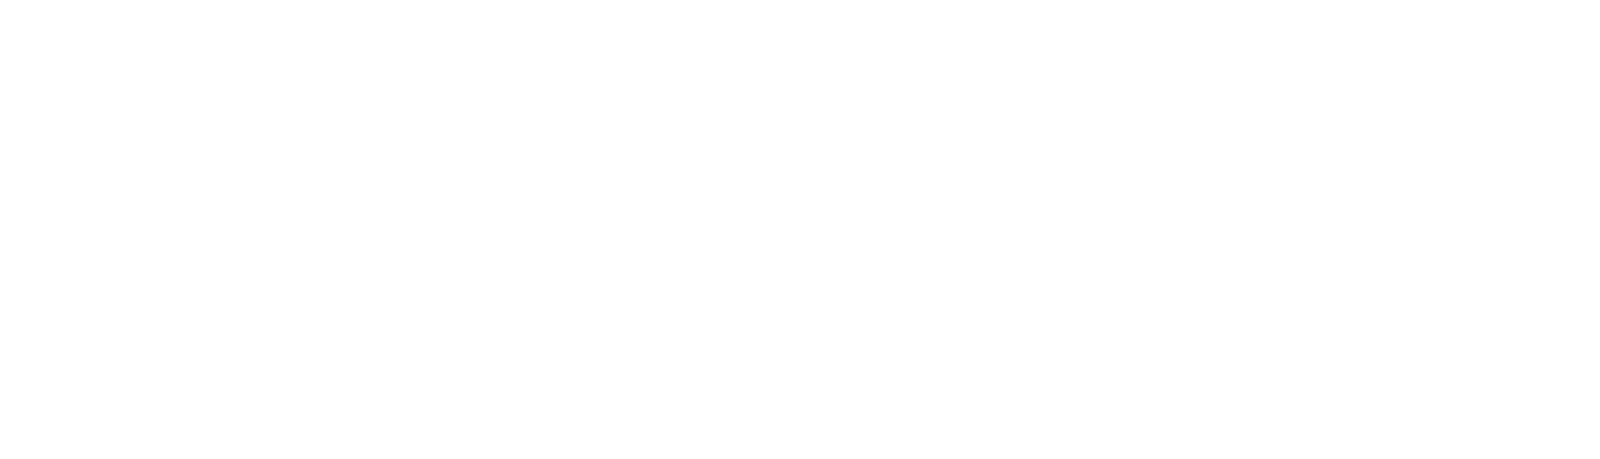 RWE logo pour fonds sombres (PNG transparent)